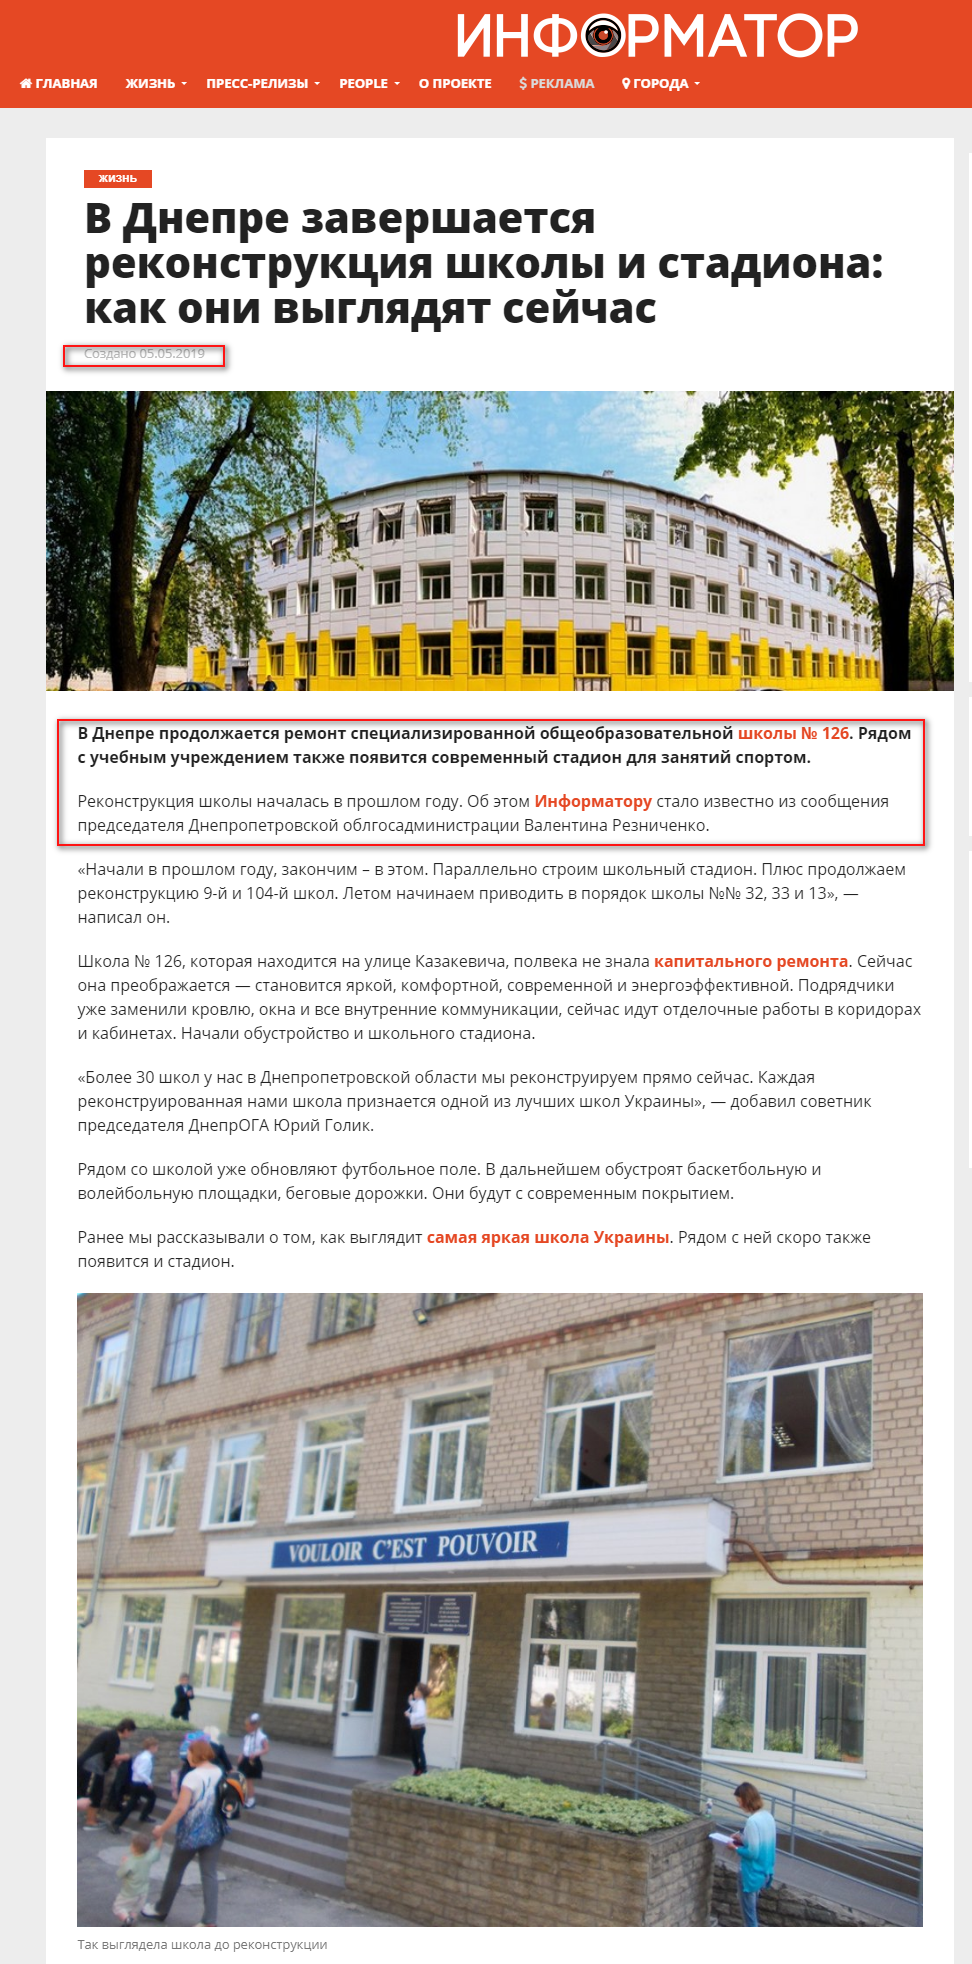 https://dp.informator.ua/2019/05/05/v-dnepre-zavershaetsya-rekonstruktsiya-shkoly-i-stadiona-kak-oni-vyglyadyat-sejchas/